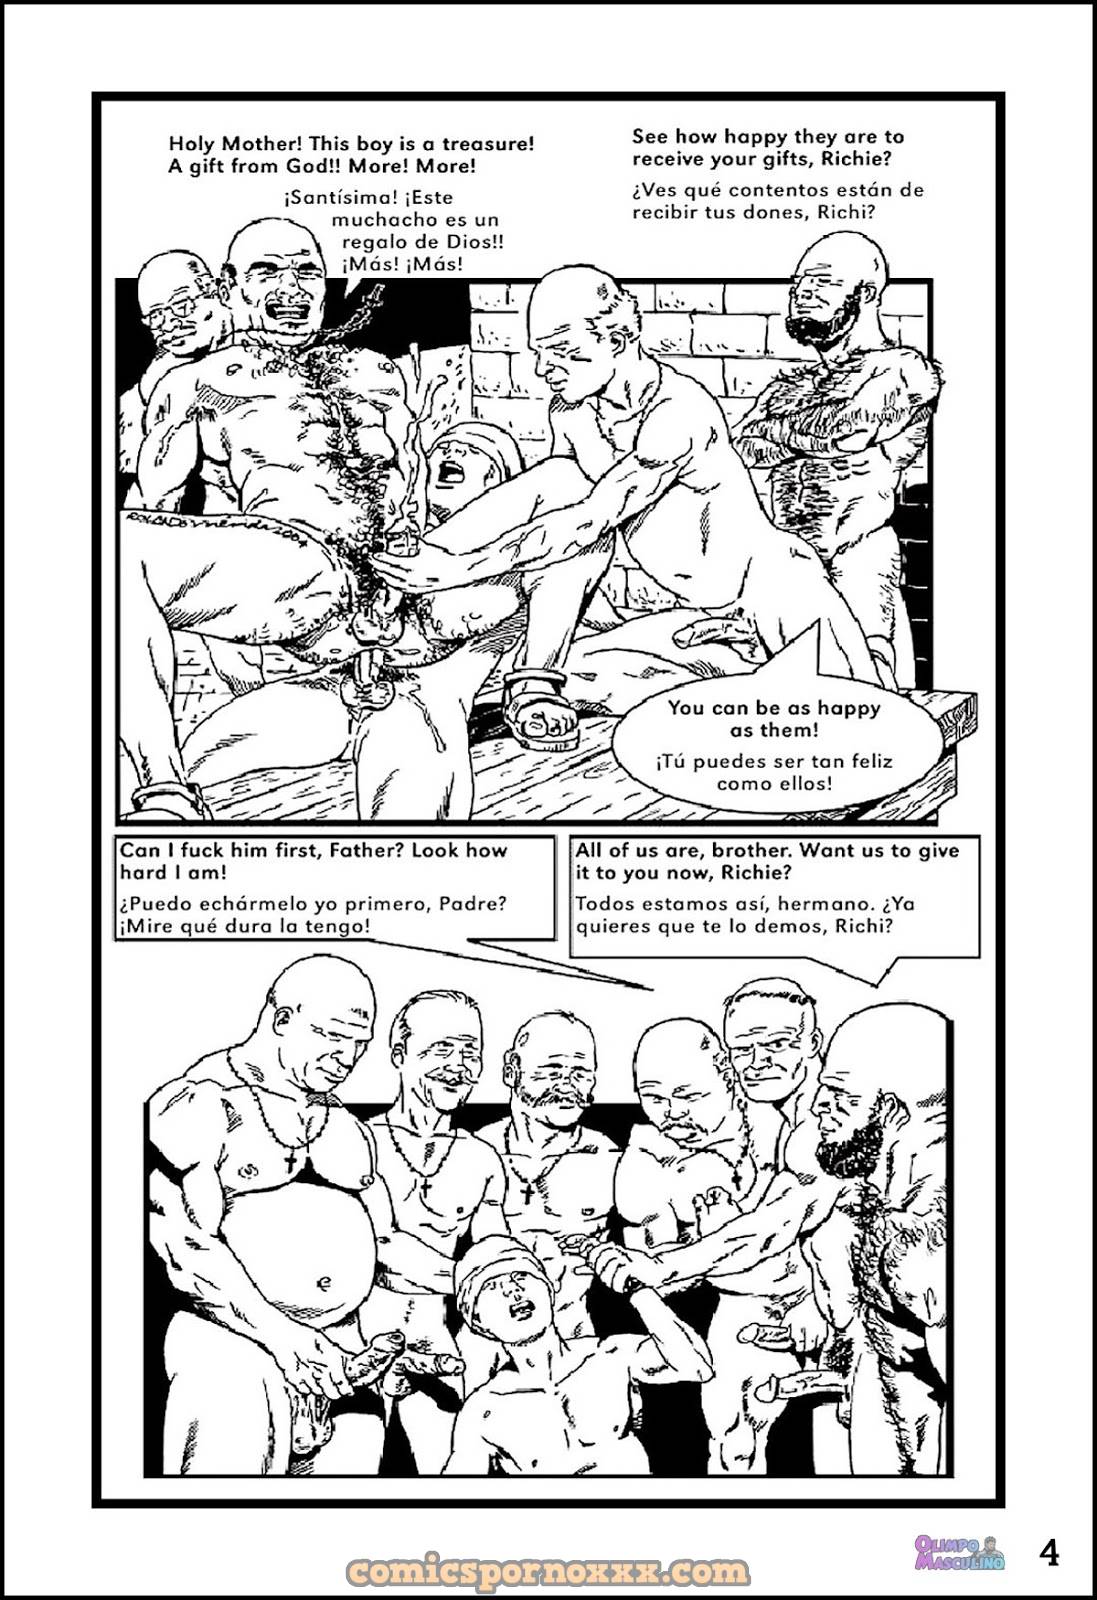 El Chico Rebelde #2 (Rolando Mérida) - 4 - Comics Porno - Hentai Manga - Cartoon XXX